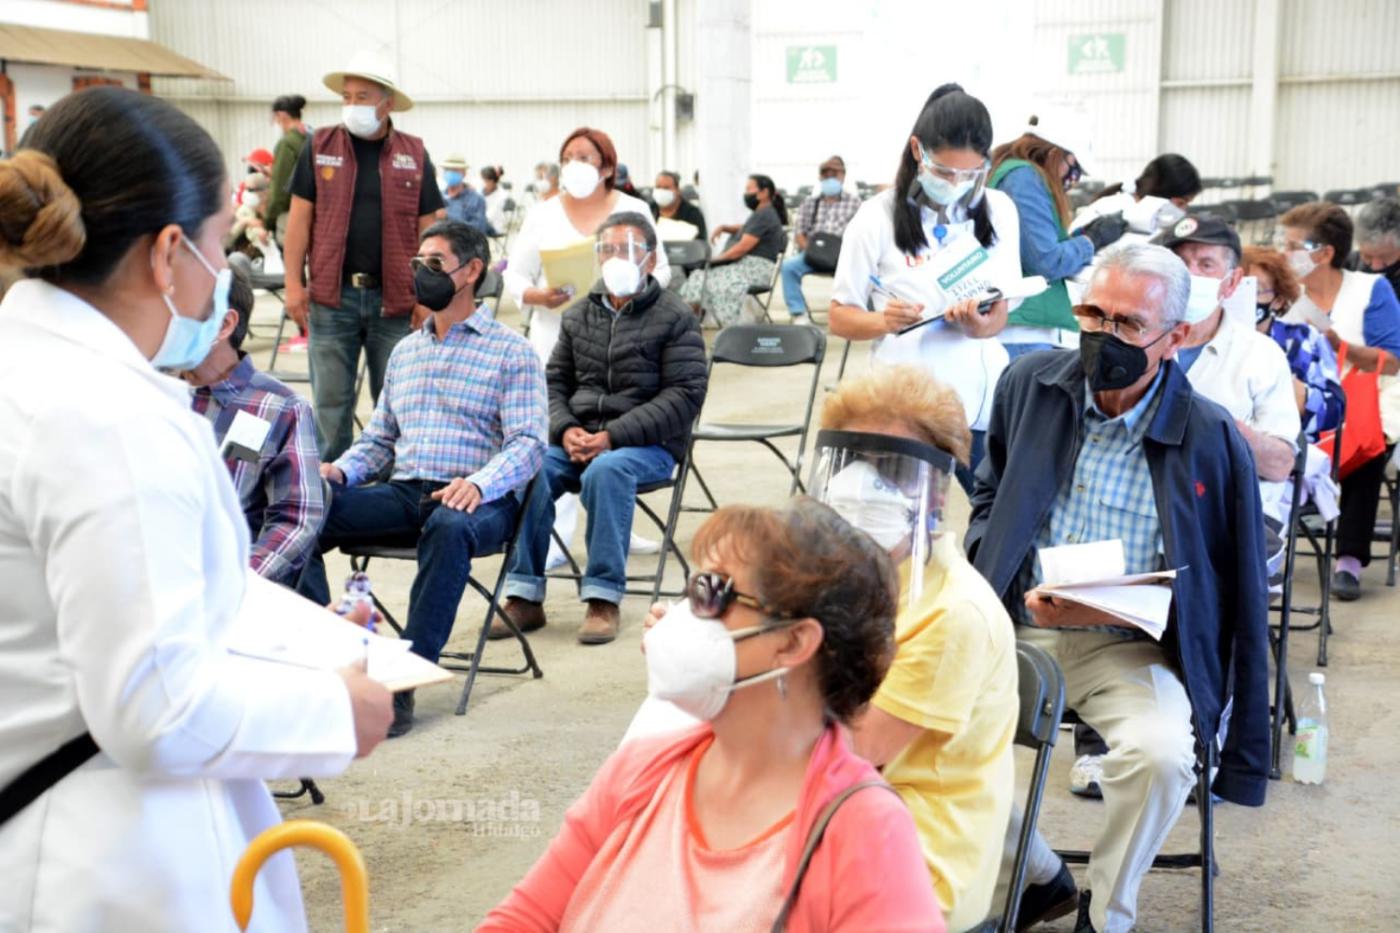 Aplican vacunas a adultos mayores en Feria de Pachuca